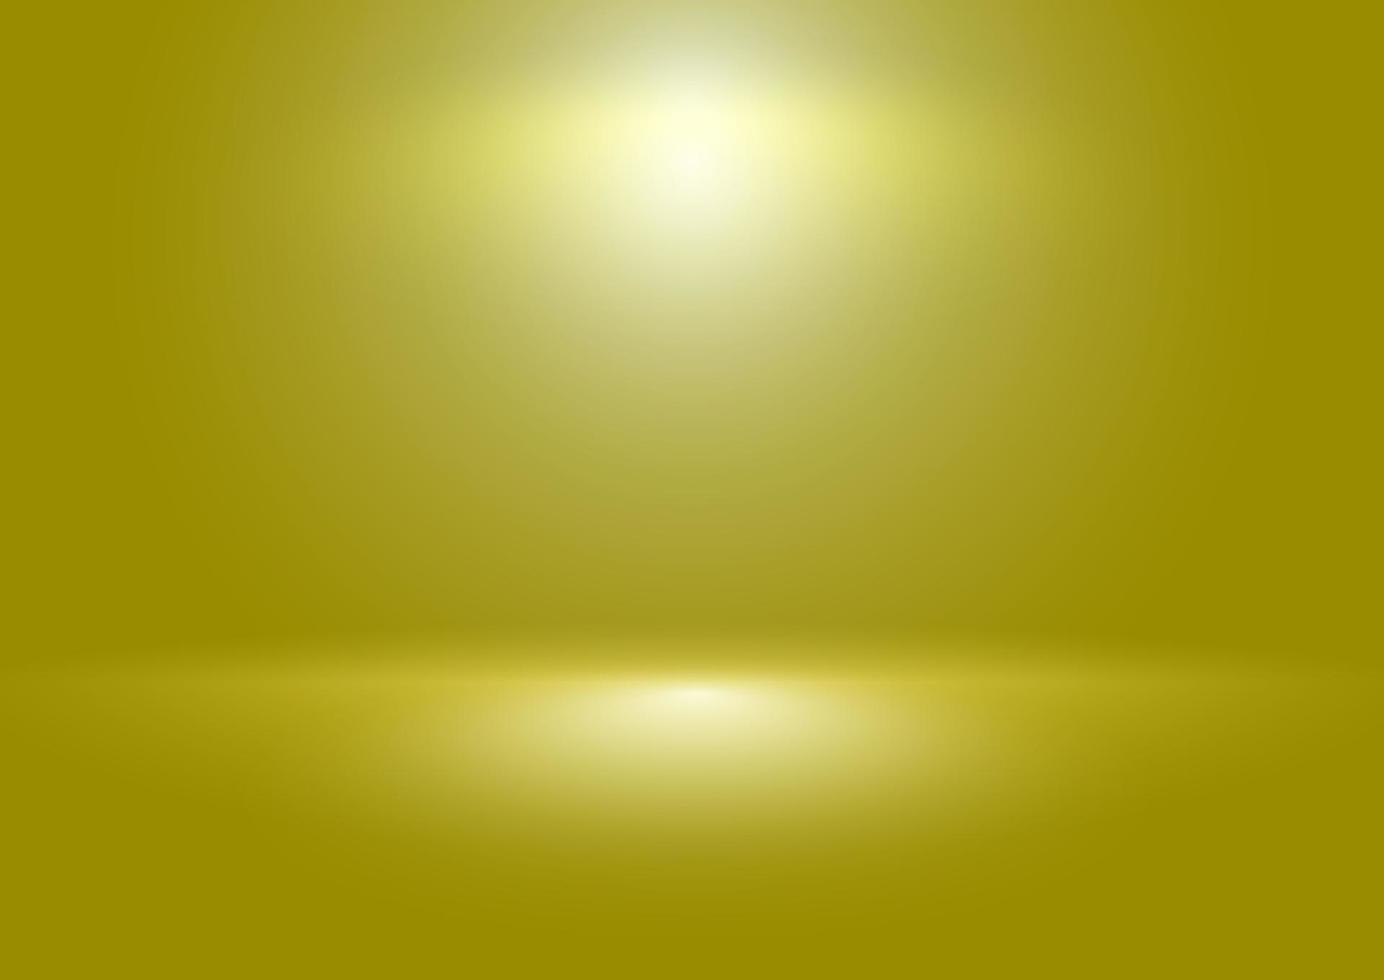 luz frash abstracta que brilla sobre el fondo dorado con desenfoque degradado. la imagen se puede utilizar como ilustración, imagen de fondo de publicidad de productos, plantilla, telón de fondo y diseño del diseñador. vector